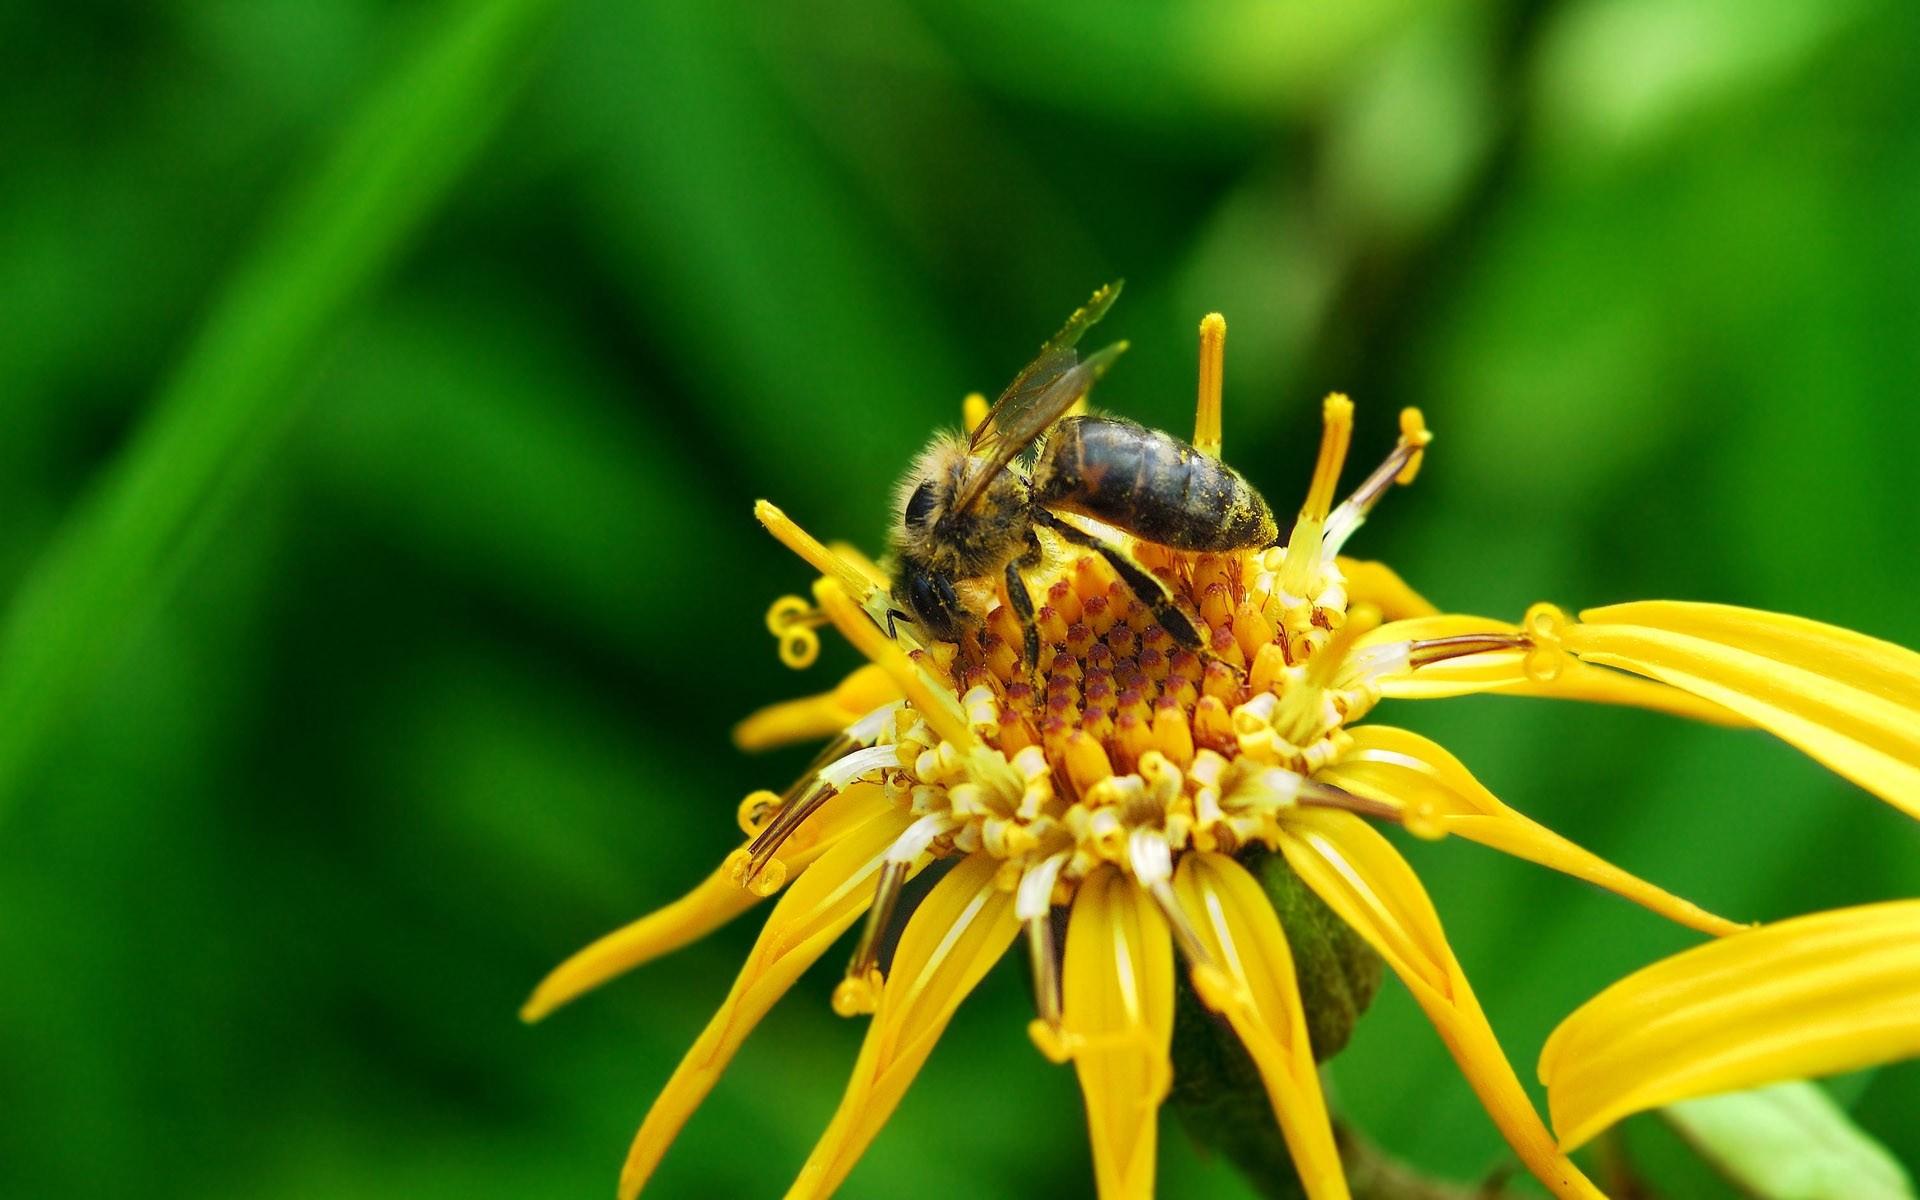 高清蜜蜂采蜜时拍摄的图片大全1